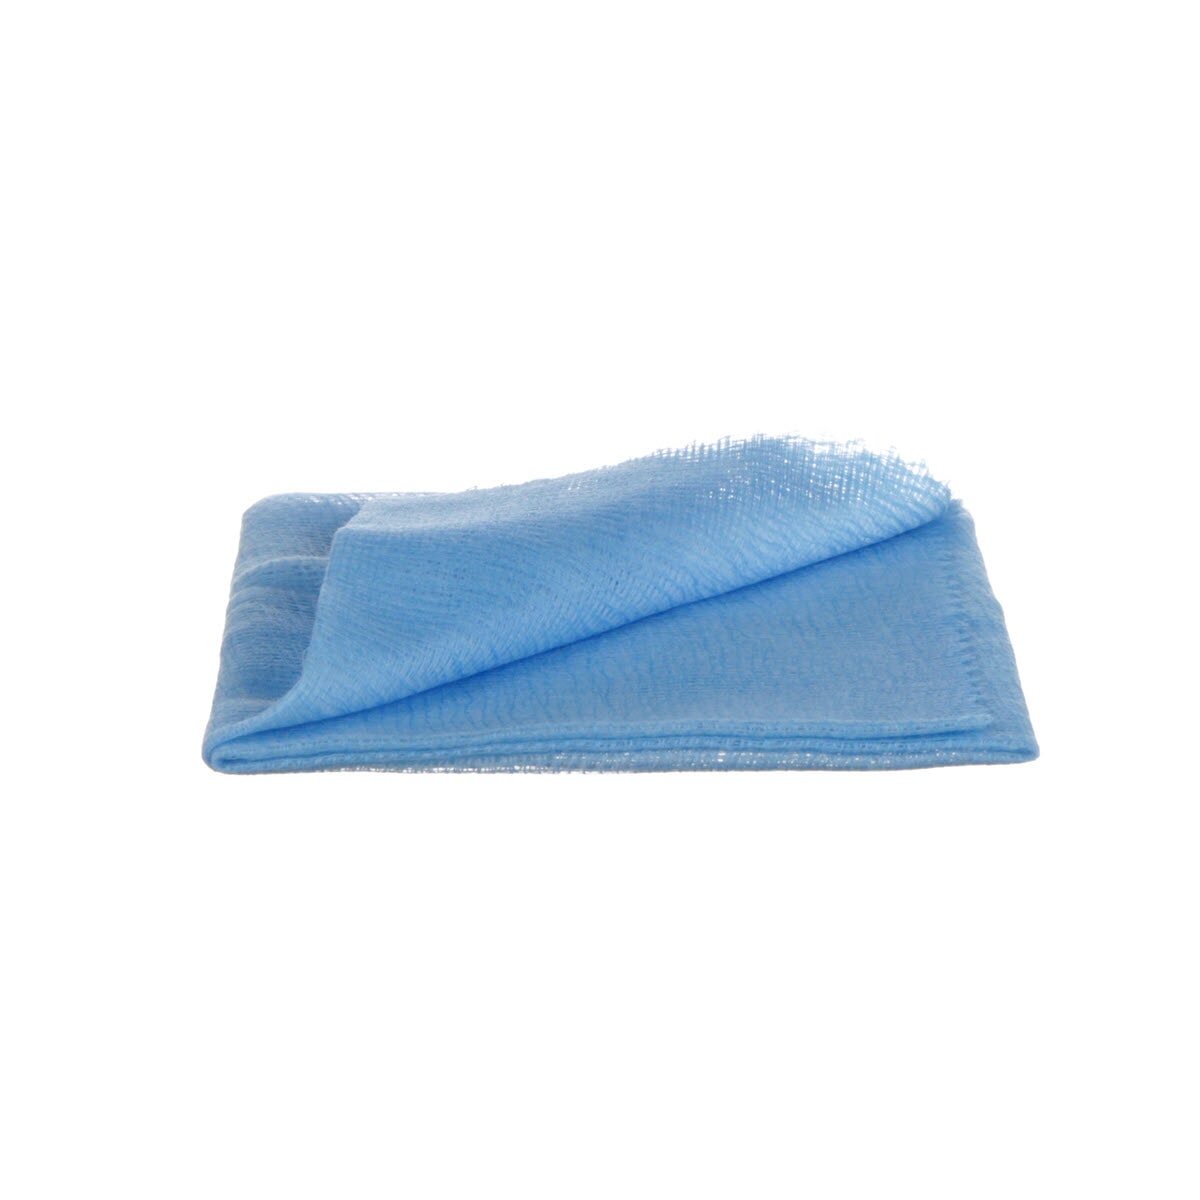 3M 7100143447 Tack Cloth, 36 in L x 18 in W, Blue